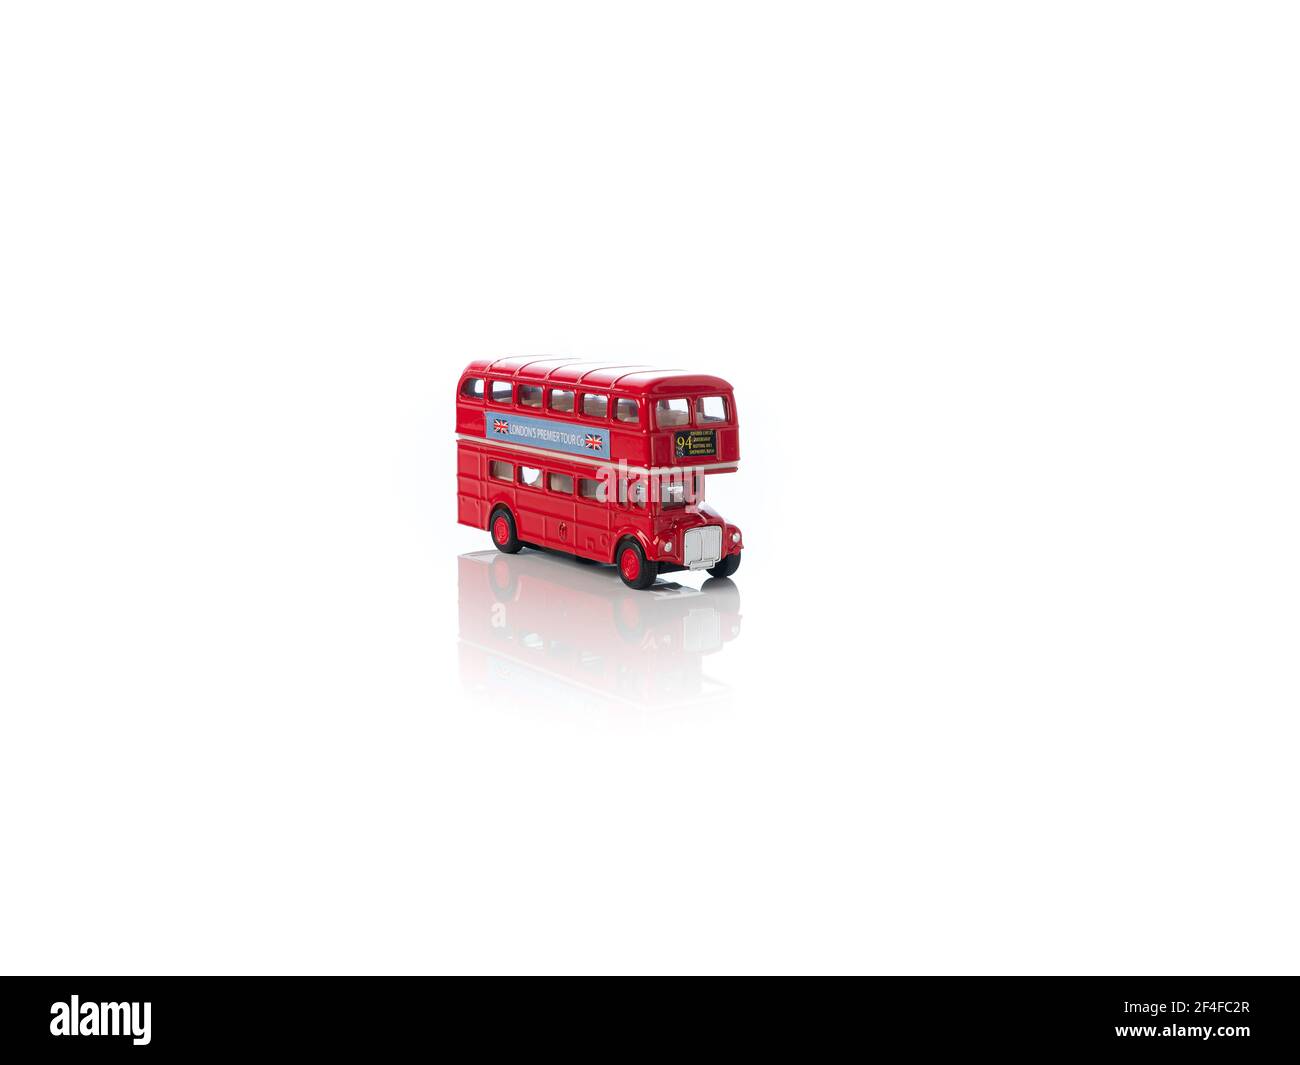 Londres, Angleterre Mars 2021. Vieux bus touristique rouge de Londres - jouet sur fond blanc, image miroir, symbole de Londres, Royaume-Uni Banque D'Images